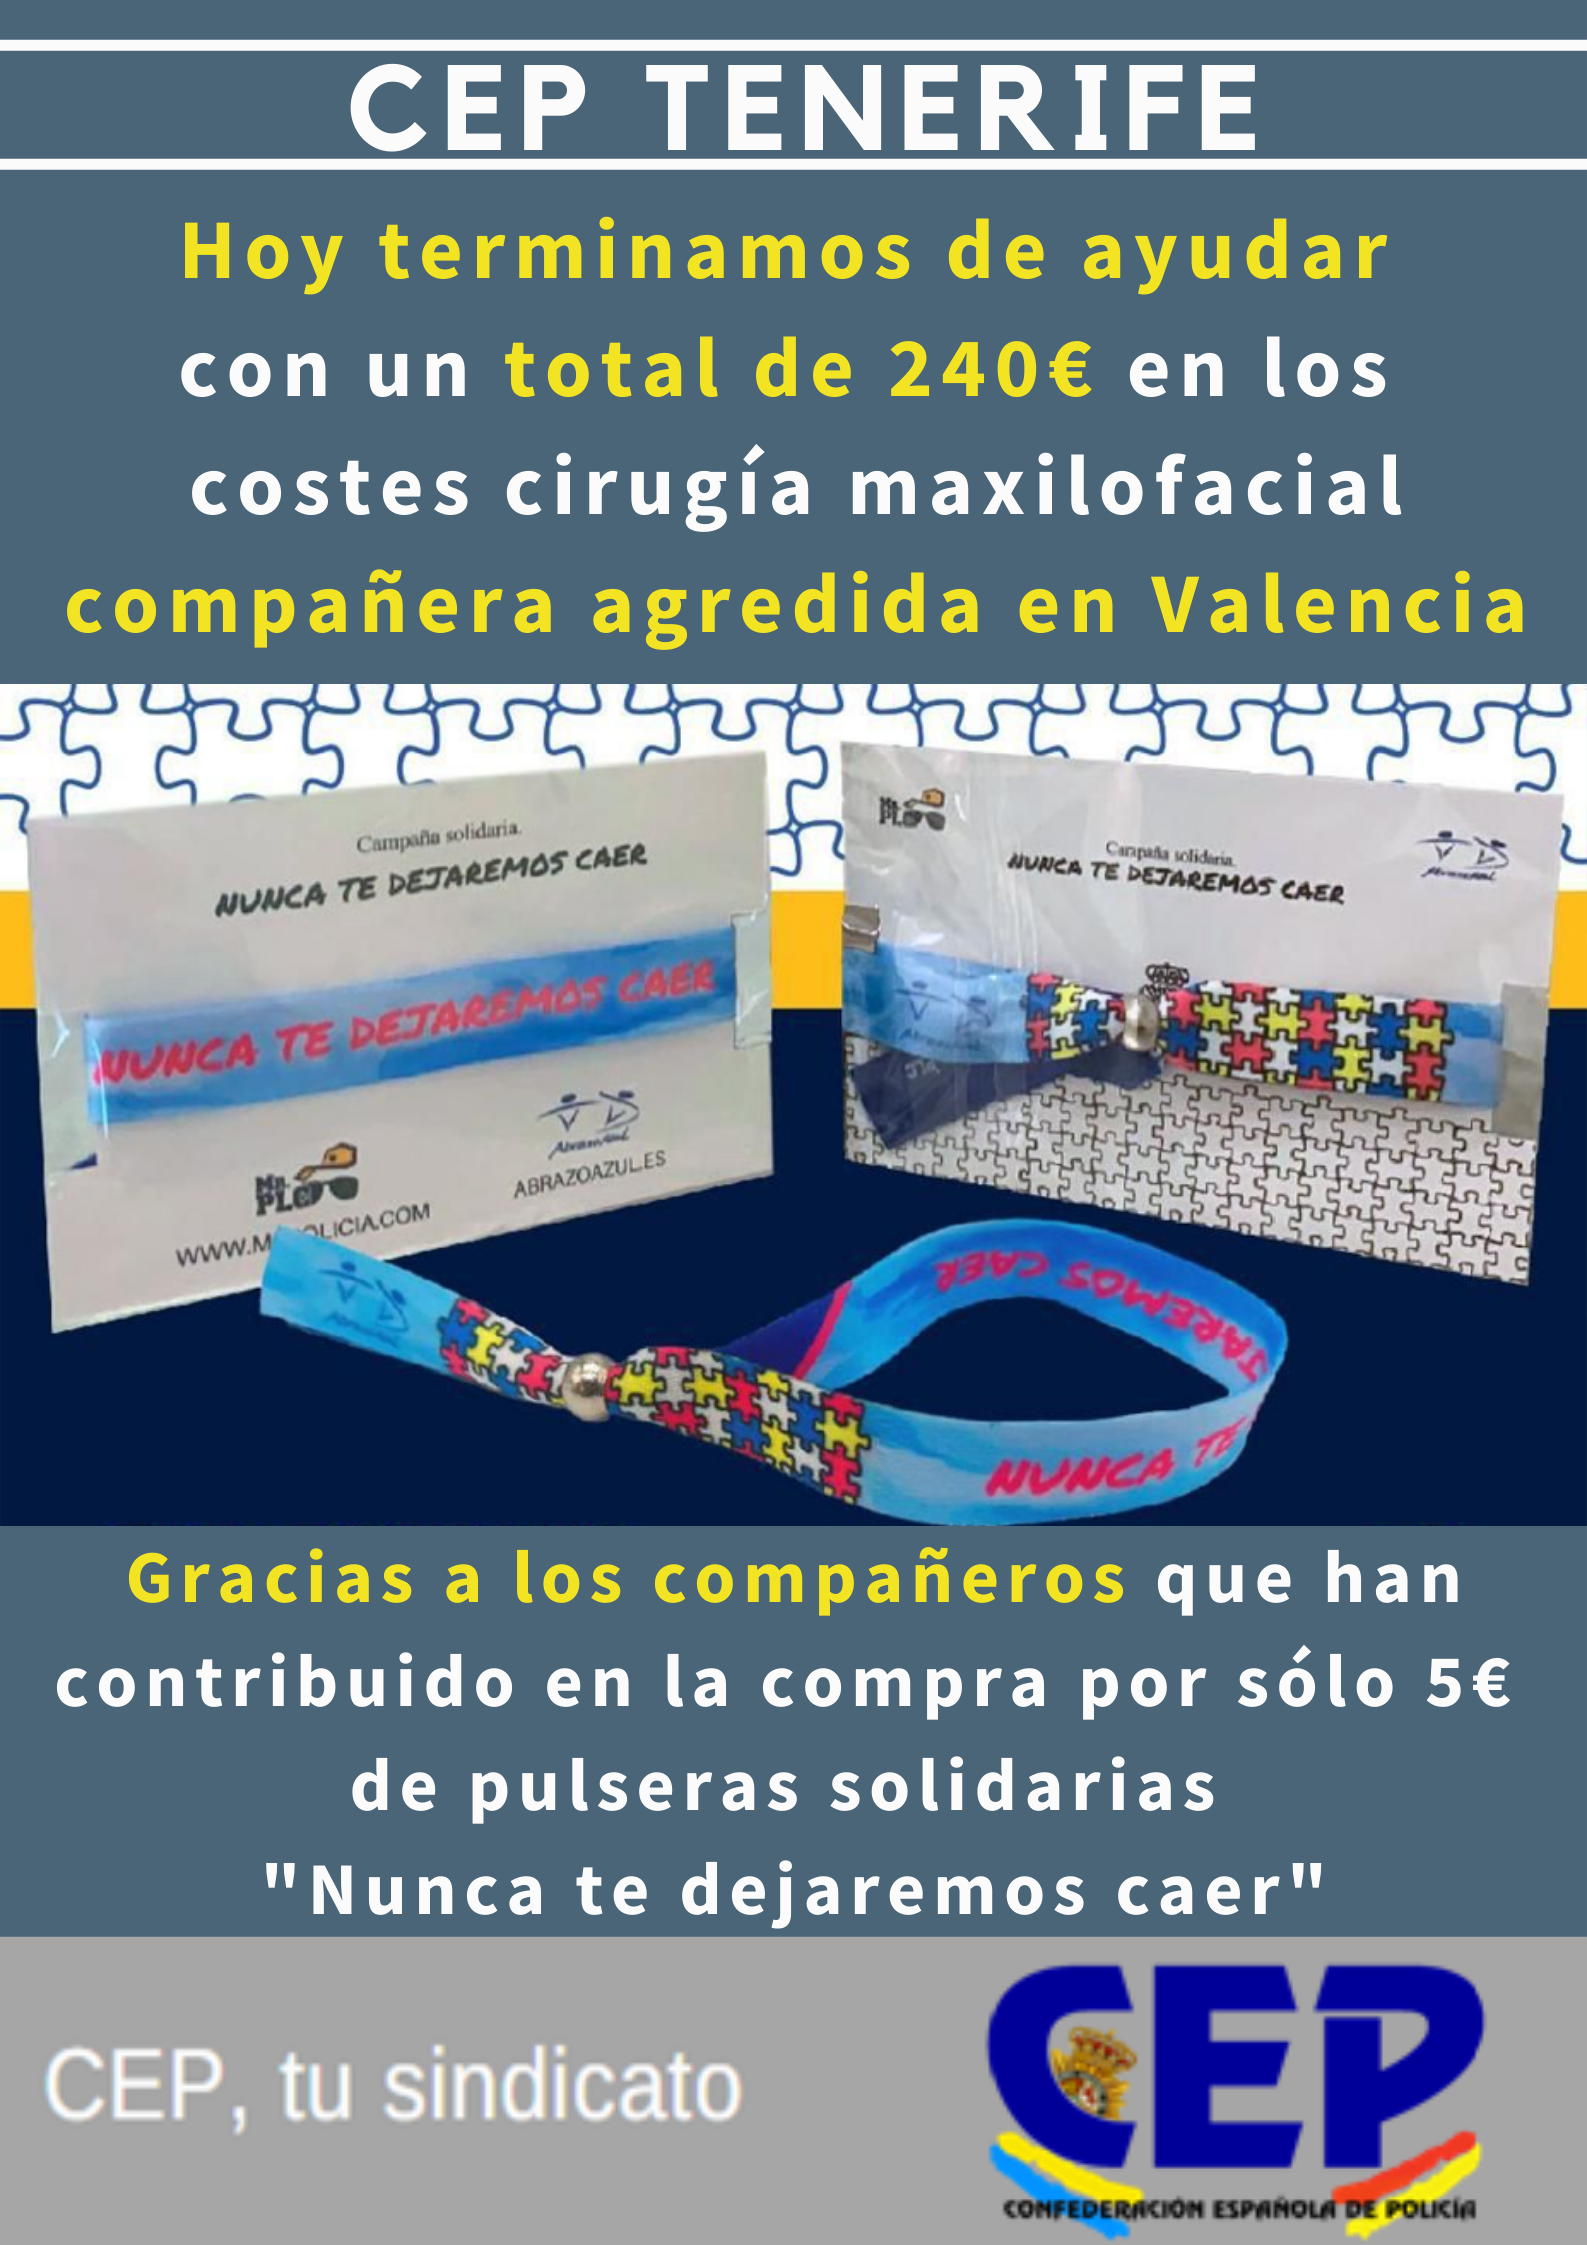 Terminamos de ayudar con un total de 240€ en los costes cirugía máxilofacial compañera agredida en Valencia